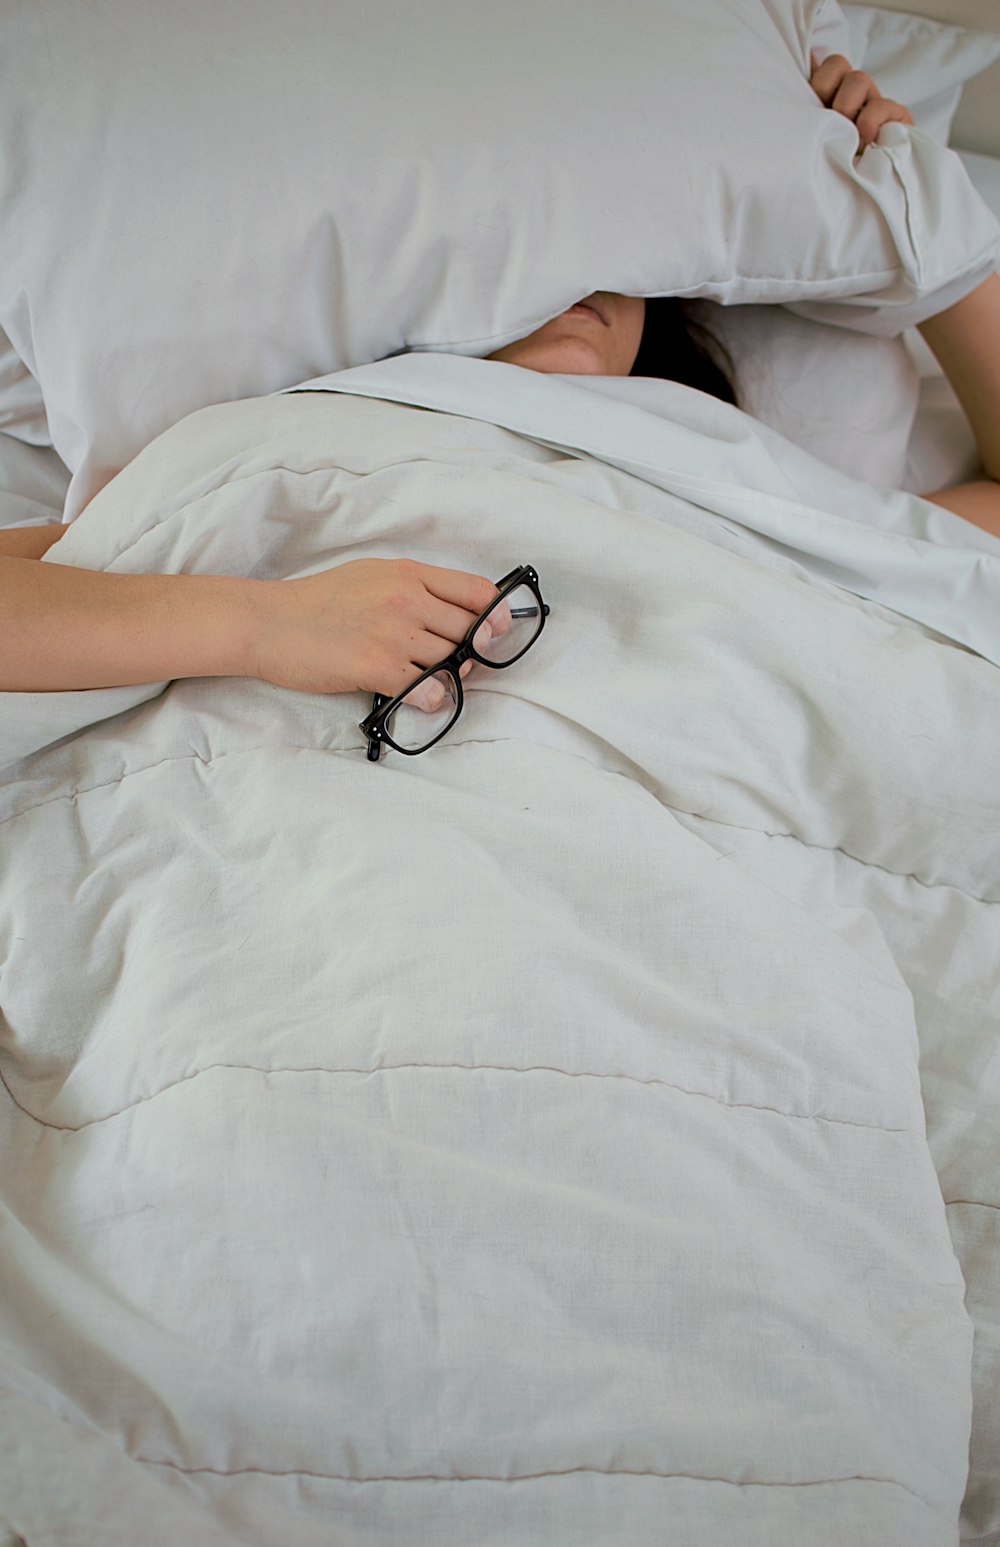 枕で顔を覆い、眼鏡を持ってベッドに横たわっている人